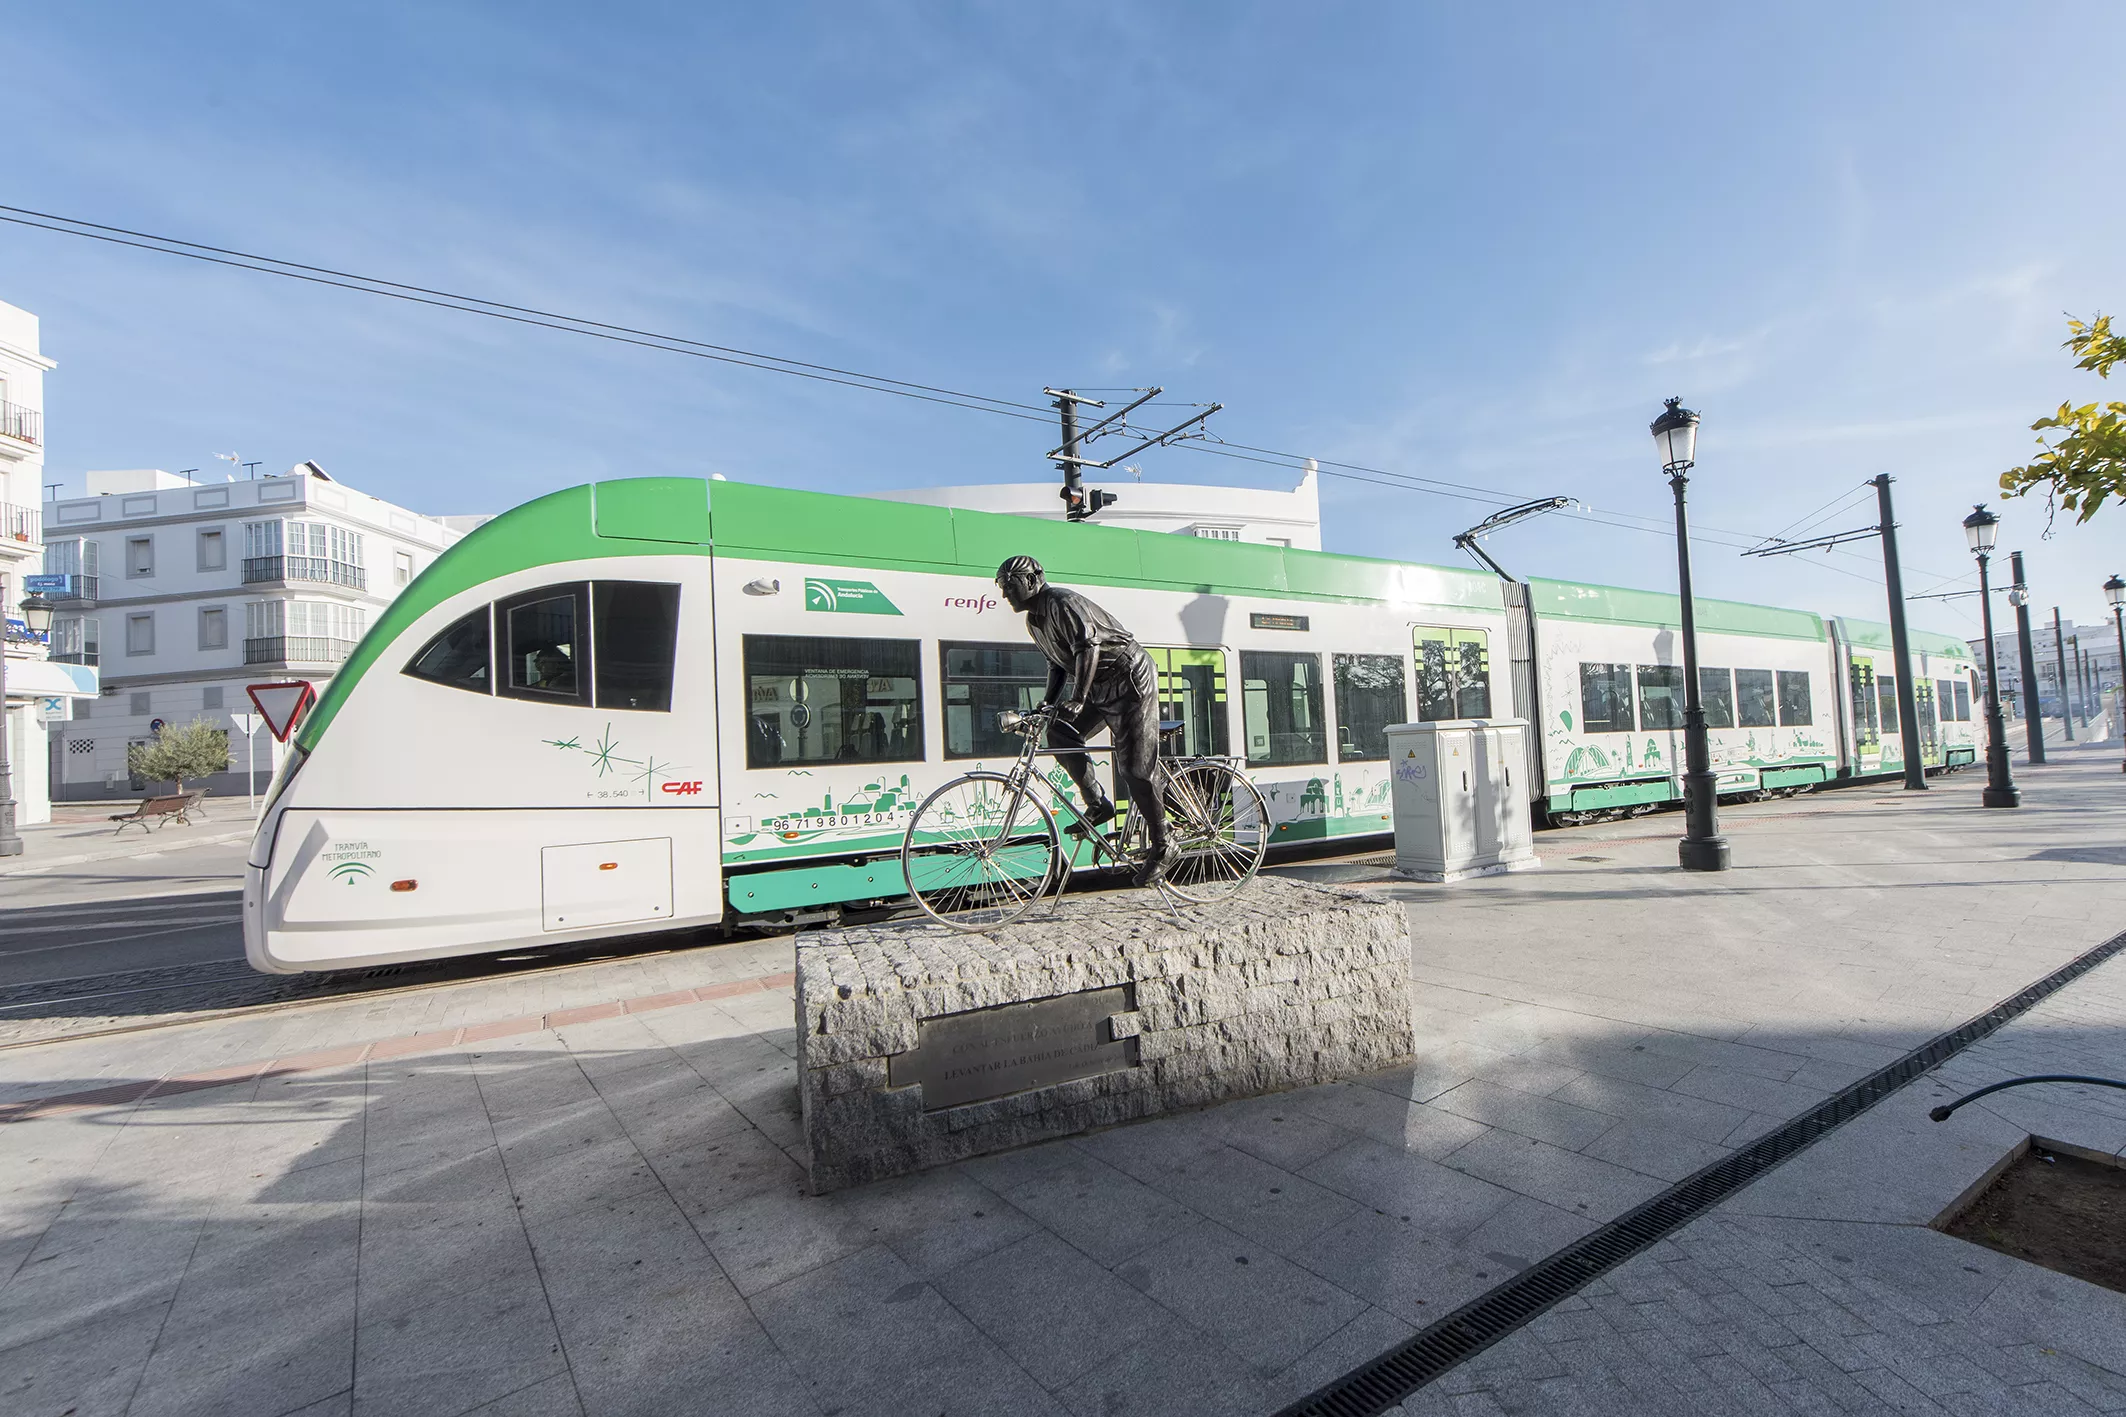 La Junta mantiene su previsión  de iniciar el próximo septiembre el servicio del Tranvía de la Bahía de Cádiz